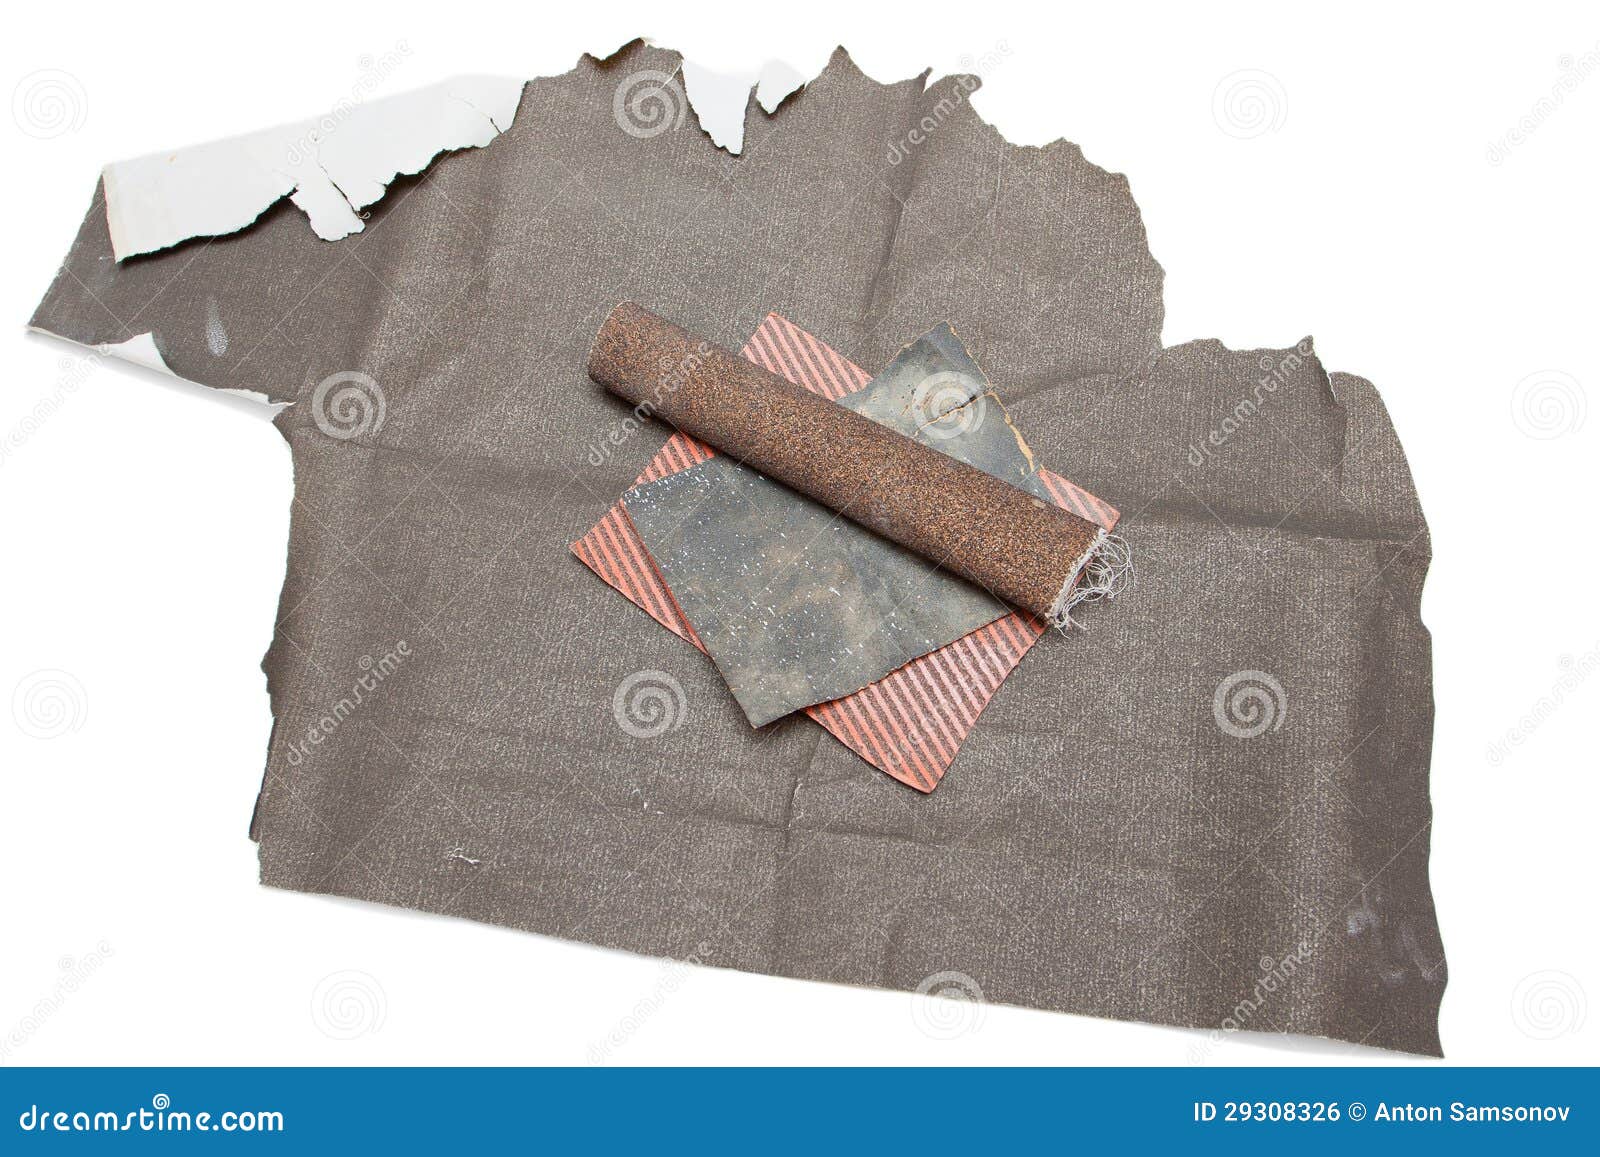 abrasive sanding paper